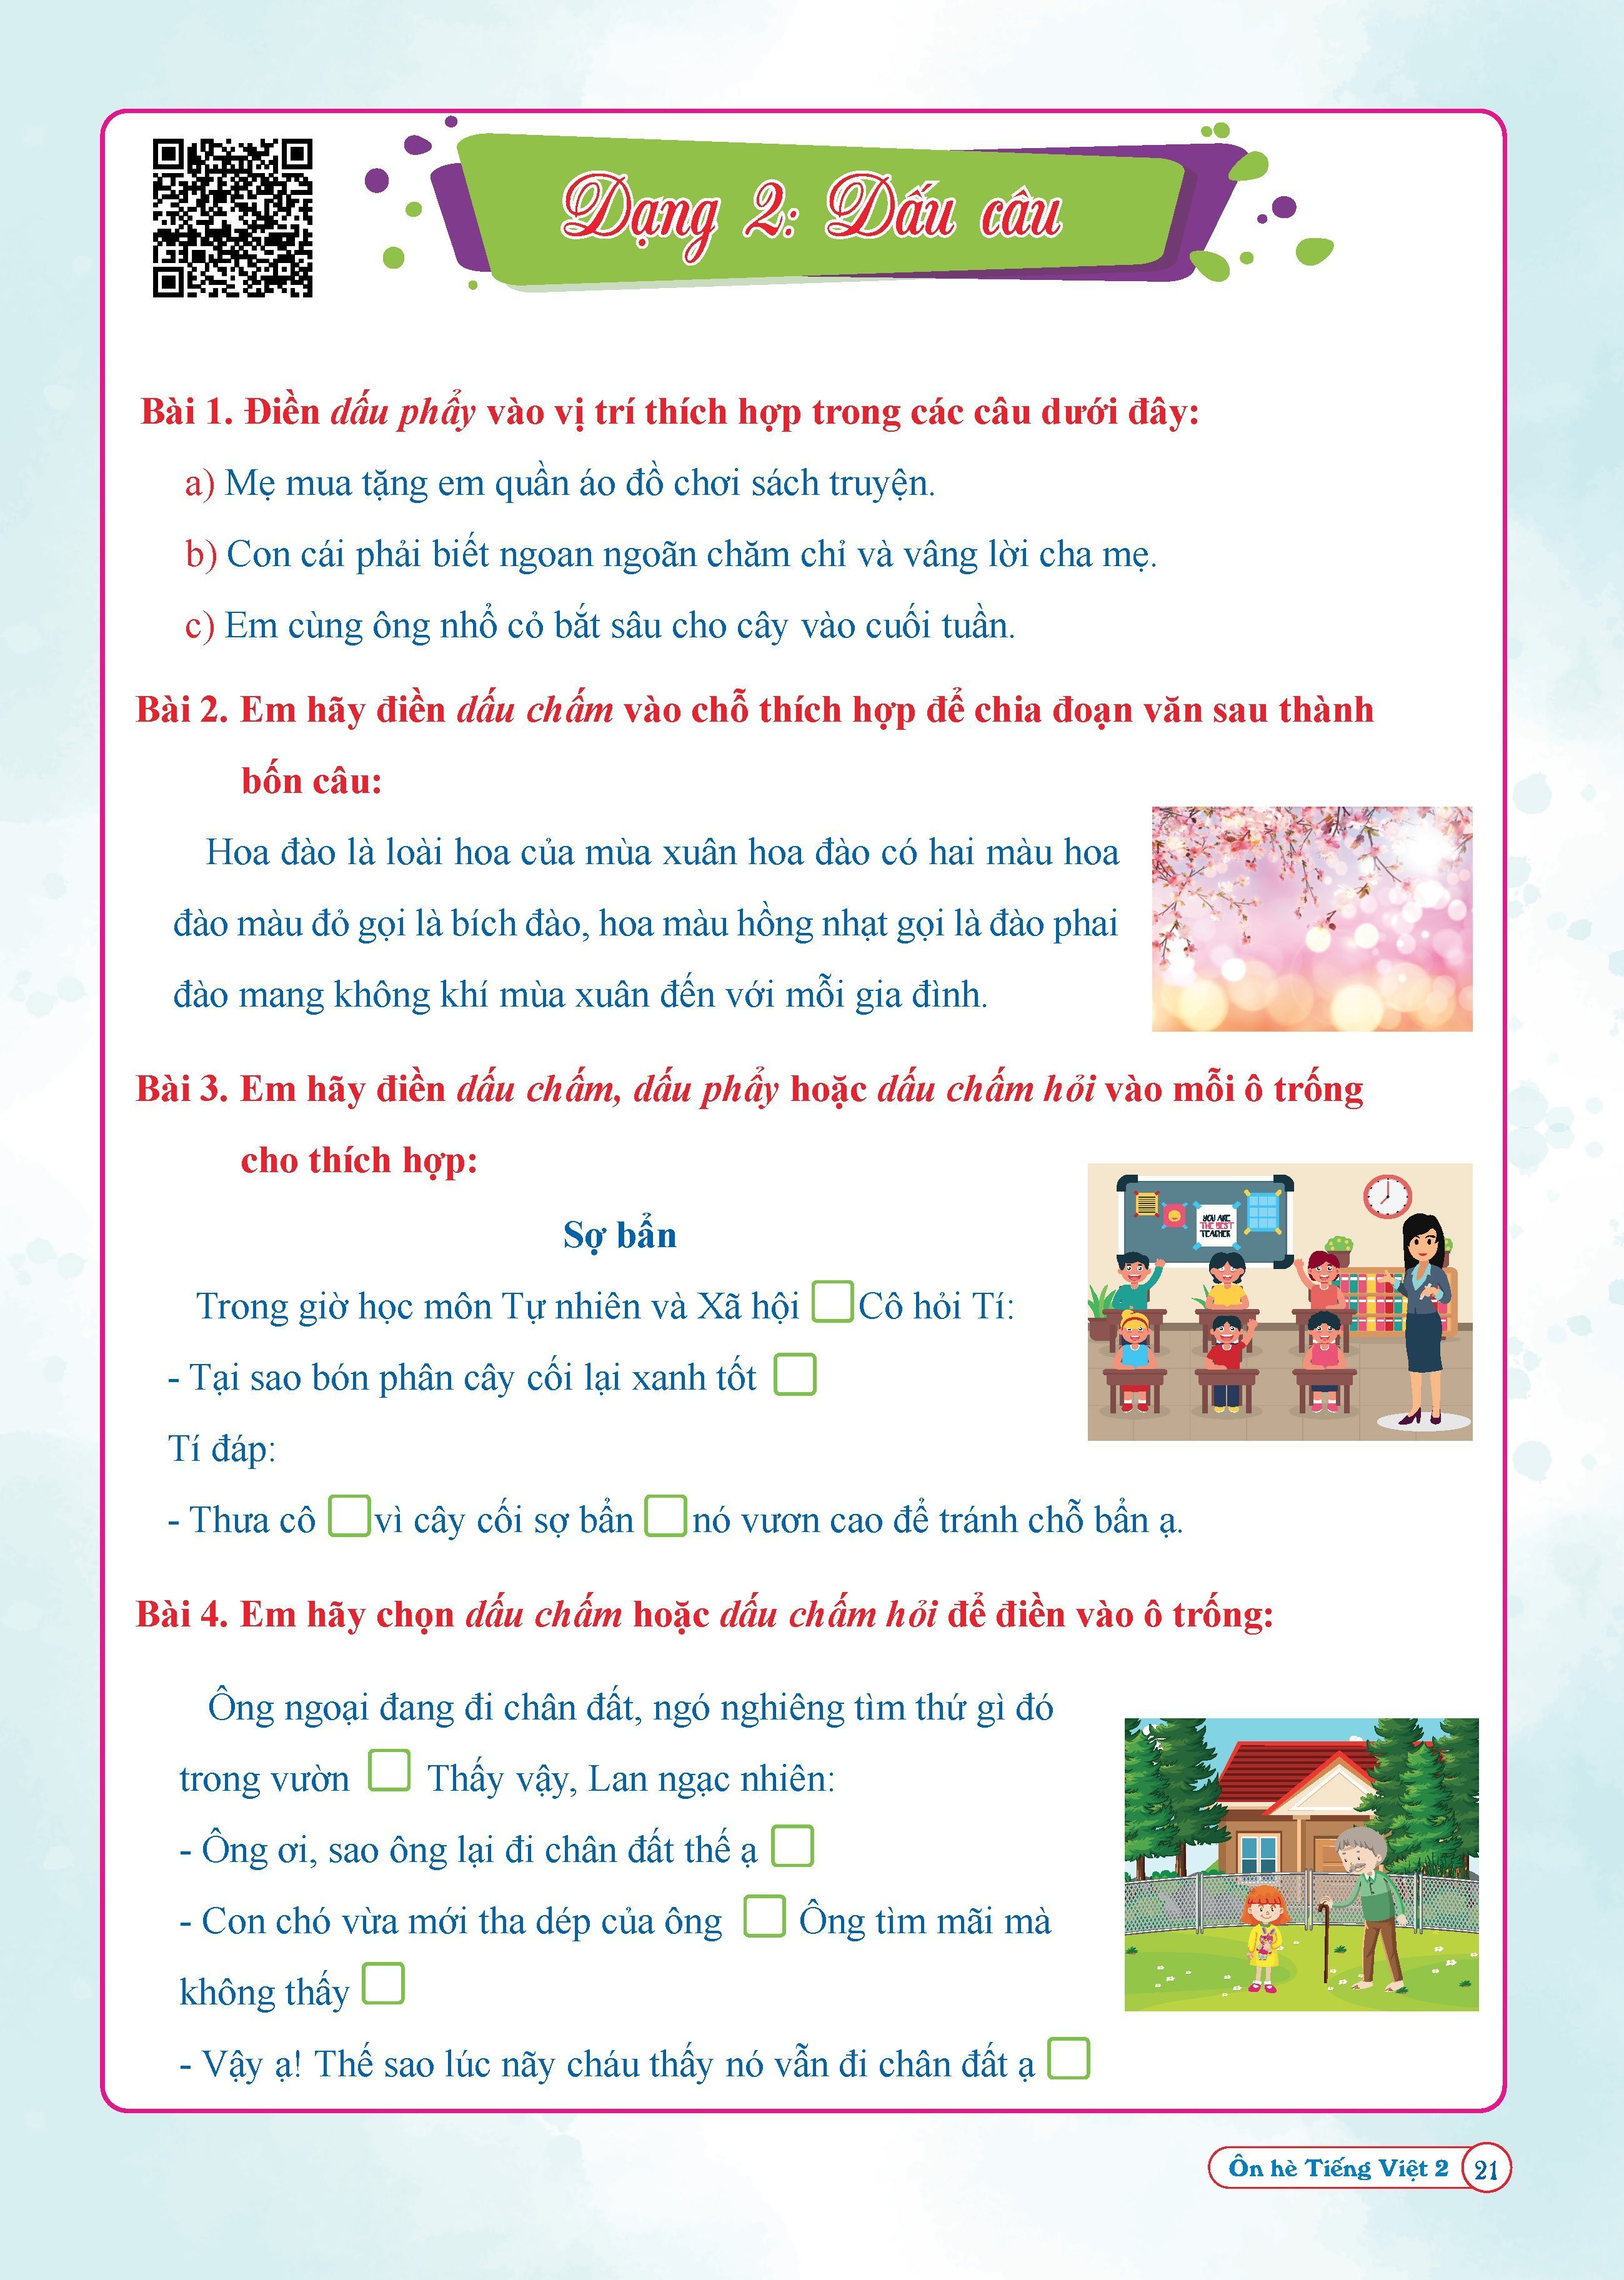 Combo Ôn Hè Toán và Tiếng Việt 2 - Chương Trình Mới - Dành cho học sinh lớp 2 lên 3 (2 cuốn)